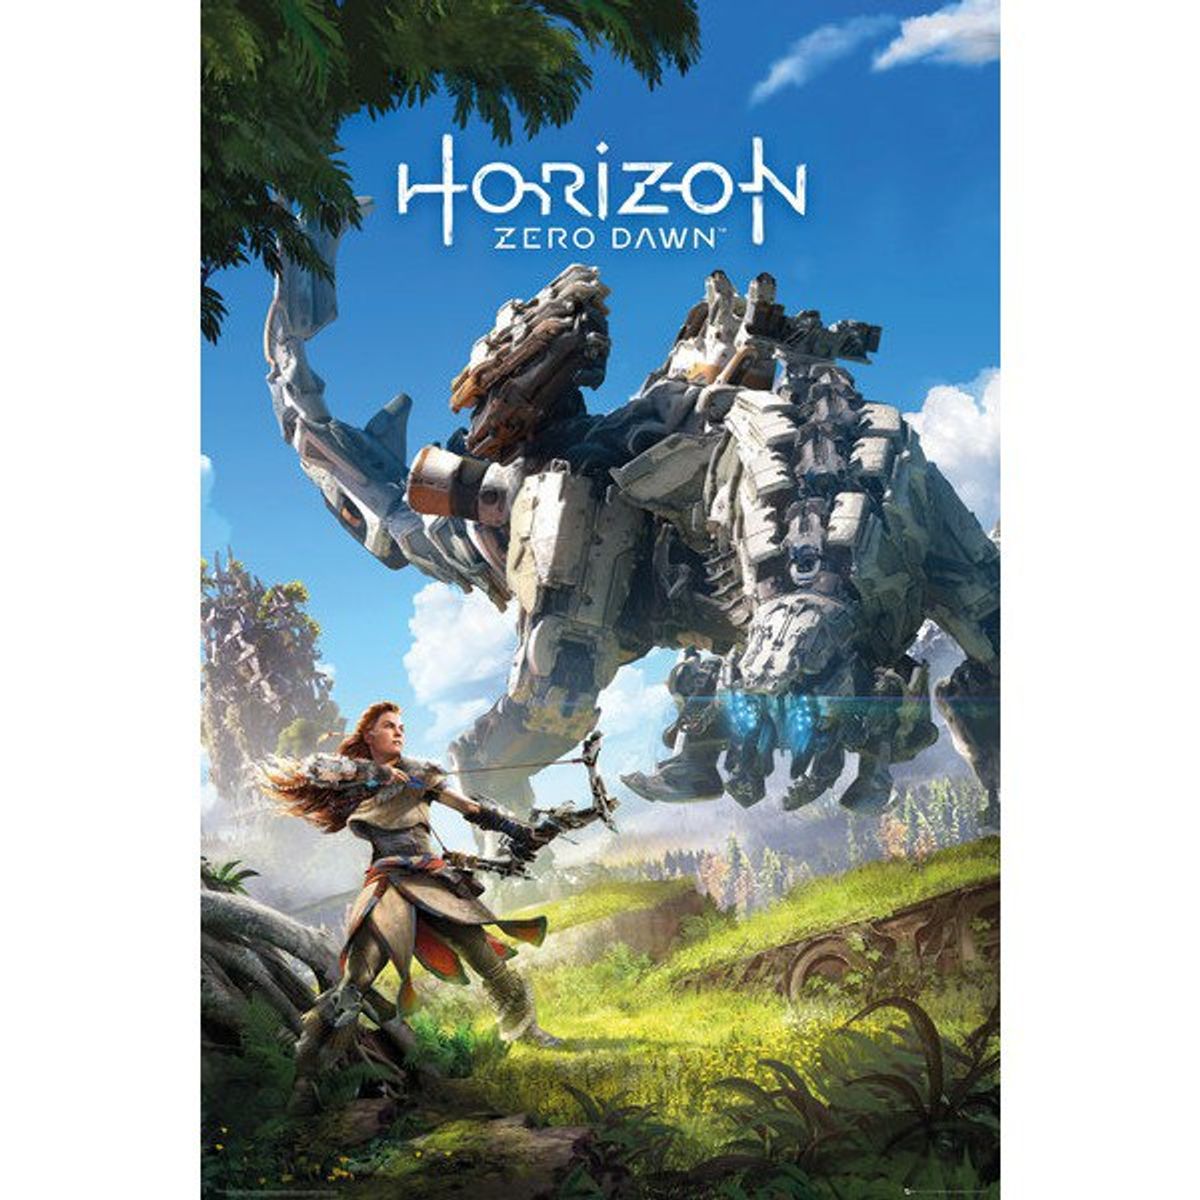 Review Of "Horizon Zero Dawn"